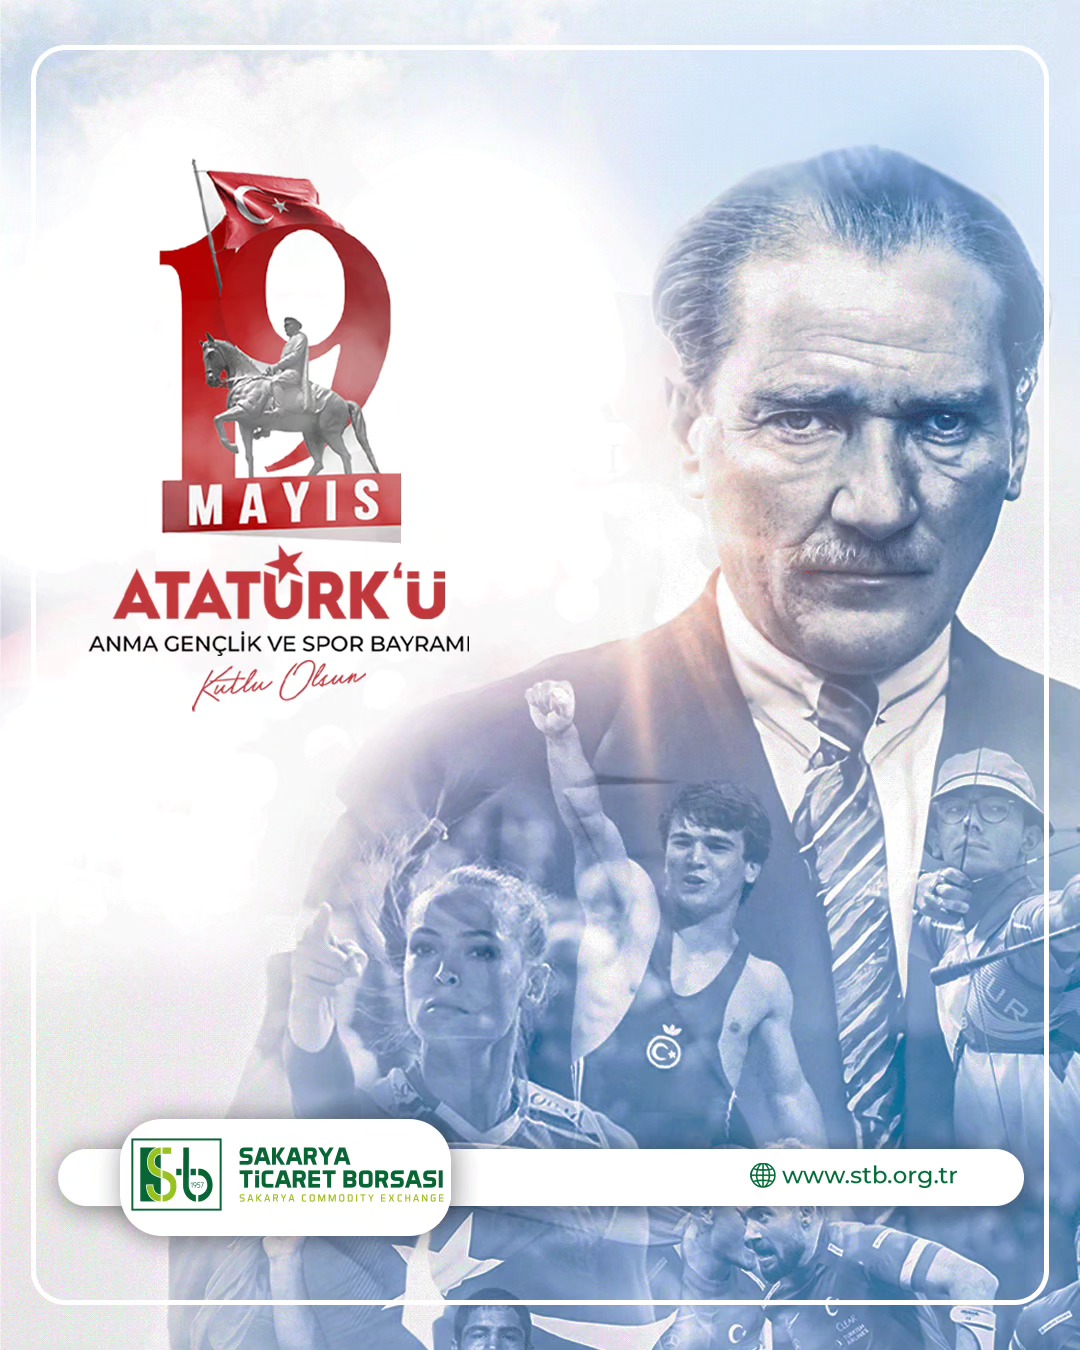 Sakarya Ticaret Borsası, 19 Mayıs Atatürk'ü Anma, Gençlik ve Spor Bayramı'nı coşkuyla kutluyor